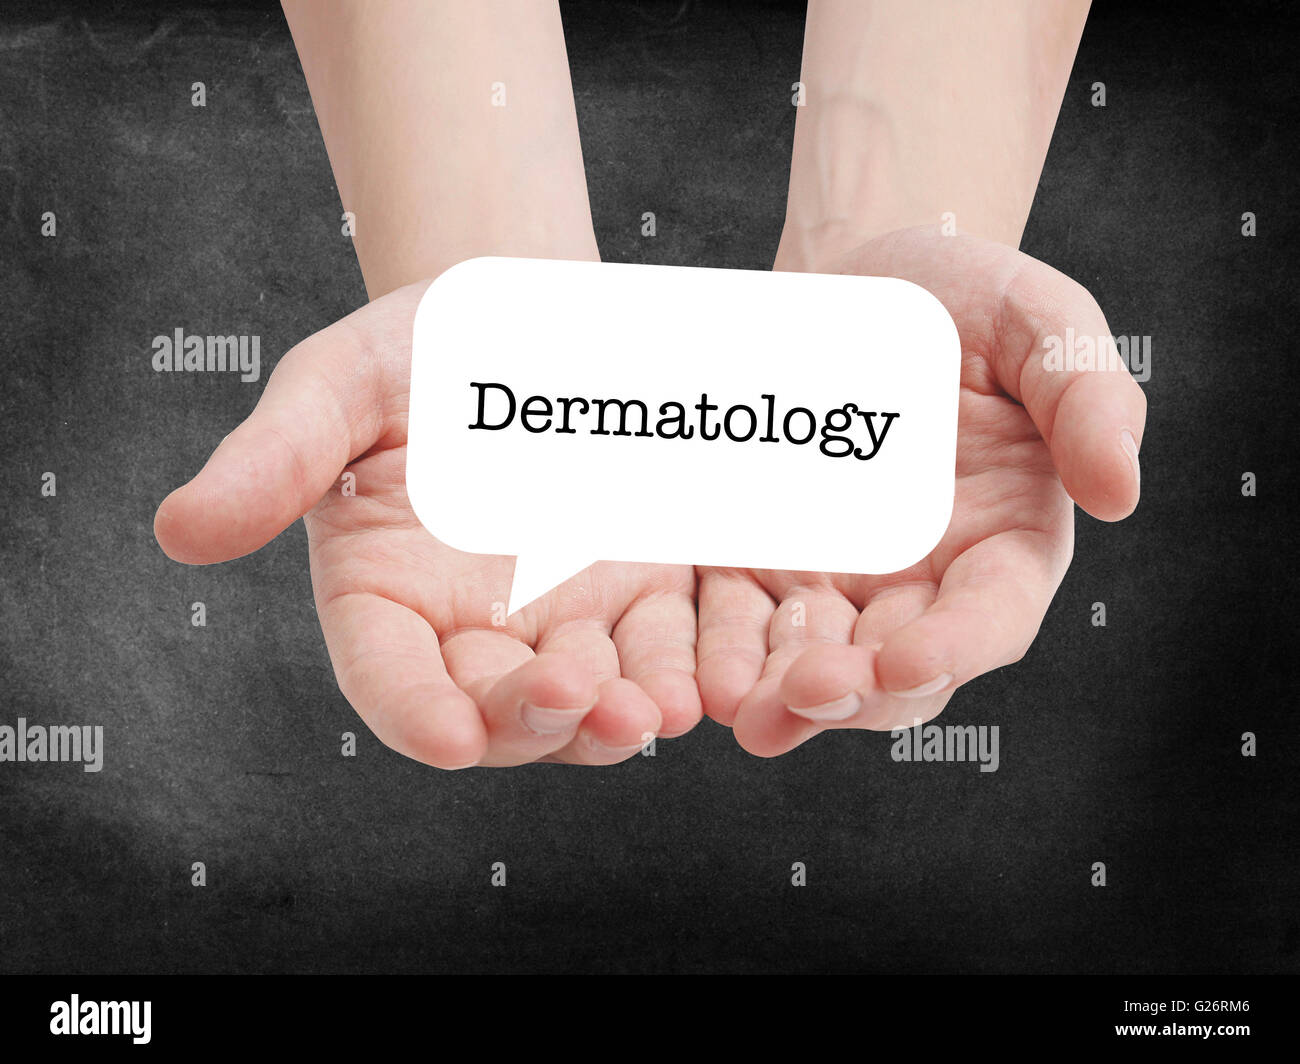 Dermatology written on a speechbubble Stock Photo